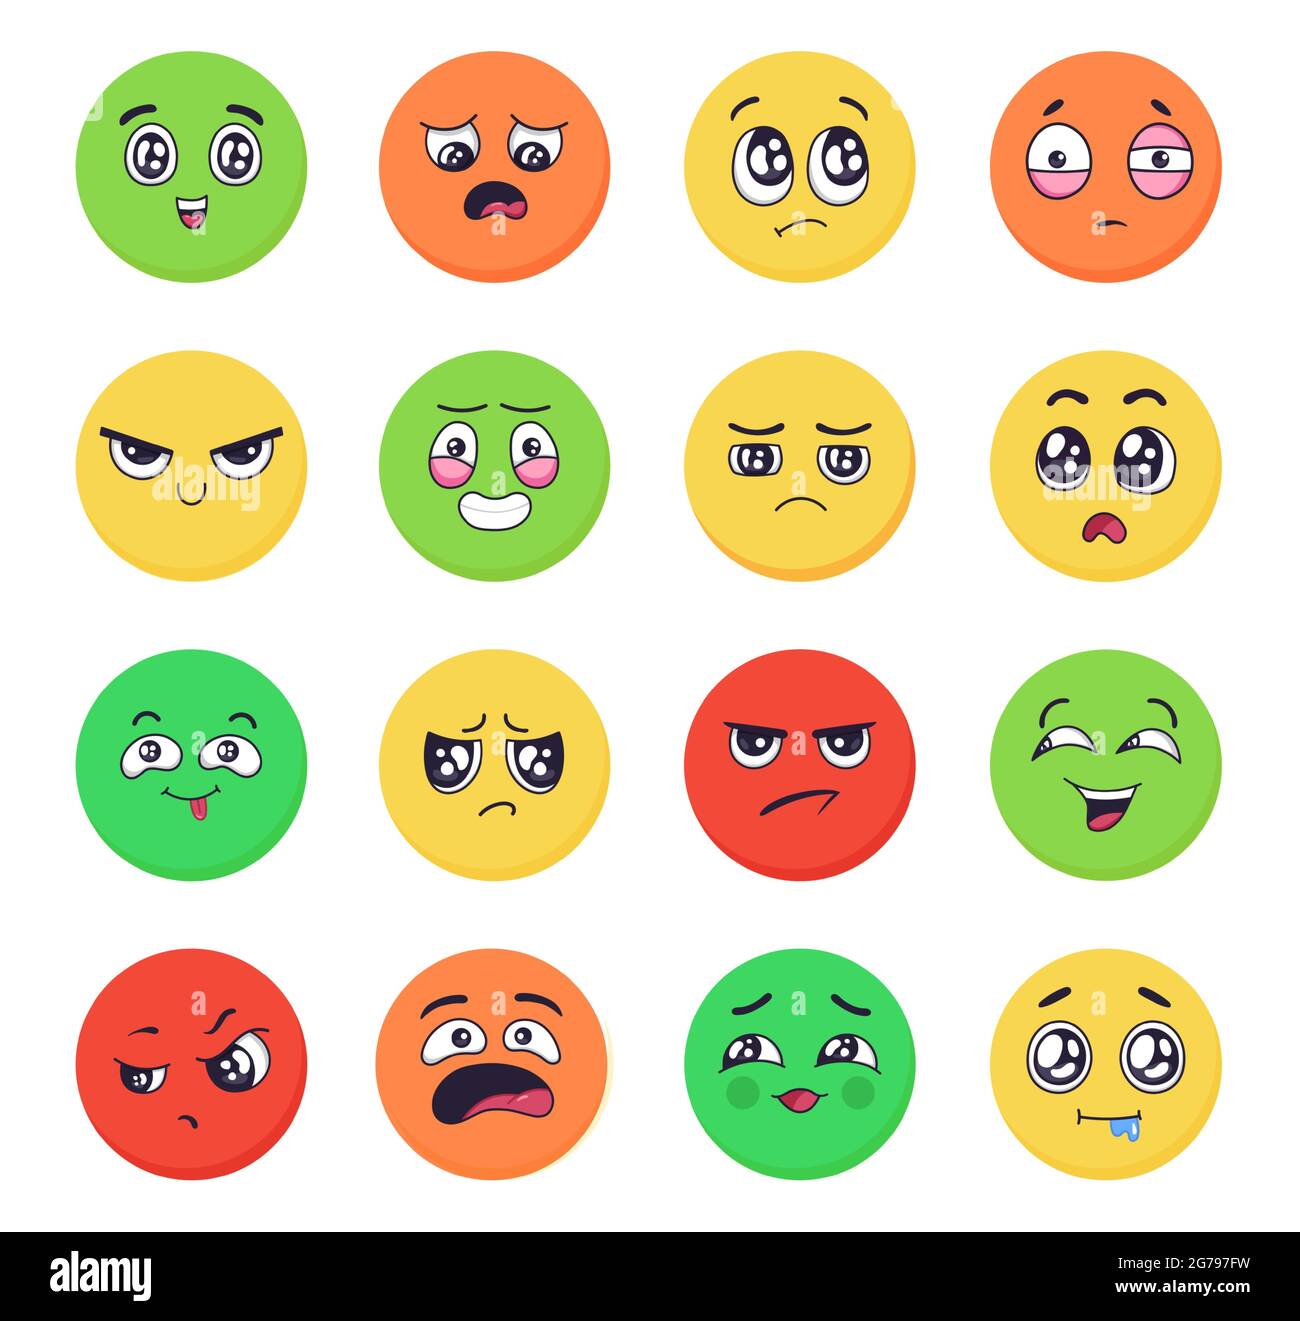 Dessin animé émotions visages ensemble. Emoji expressions avec colère et triste, bonheur et joie des gestes faciaux de différentes couleurs Illustration de Vecteur